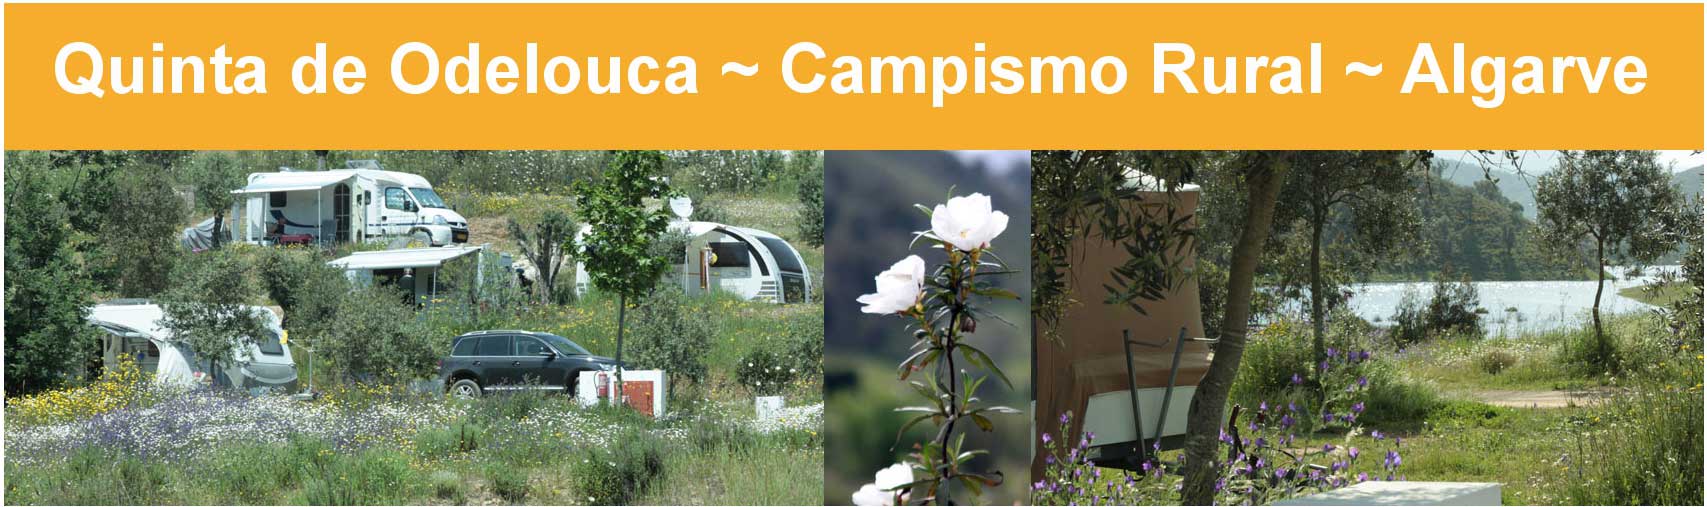 Camping Quinta de Odelouca, Algarve